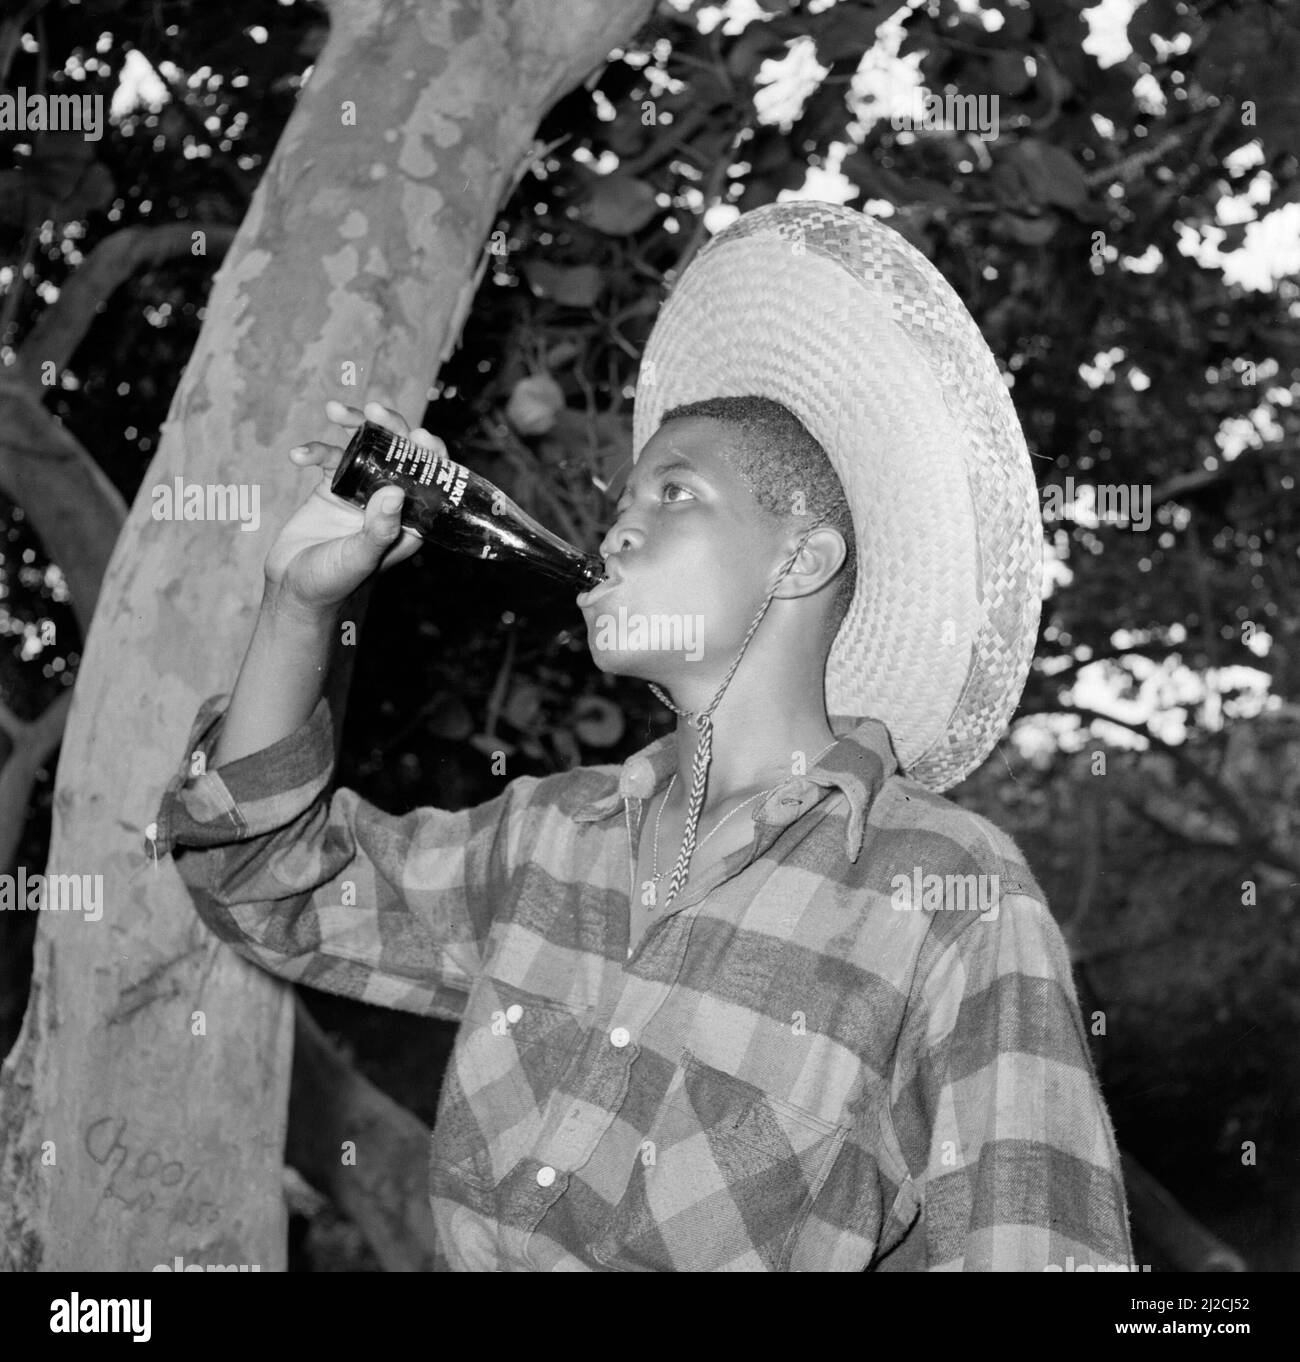 Junge trinkt eine Flasche Canada Dry in den Niederländischen Antillen oder Niederländischen Antillen Ca: 1. Oktober 1955 Stockfoto